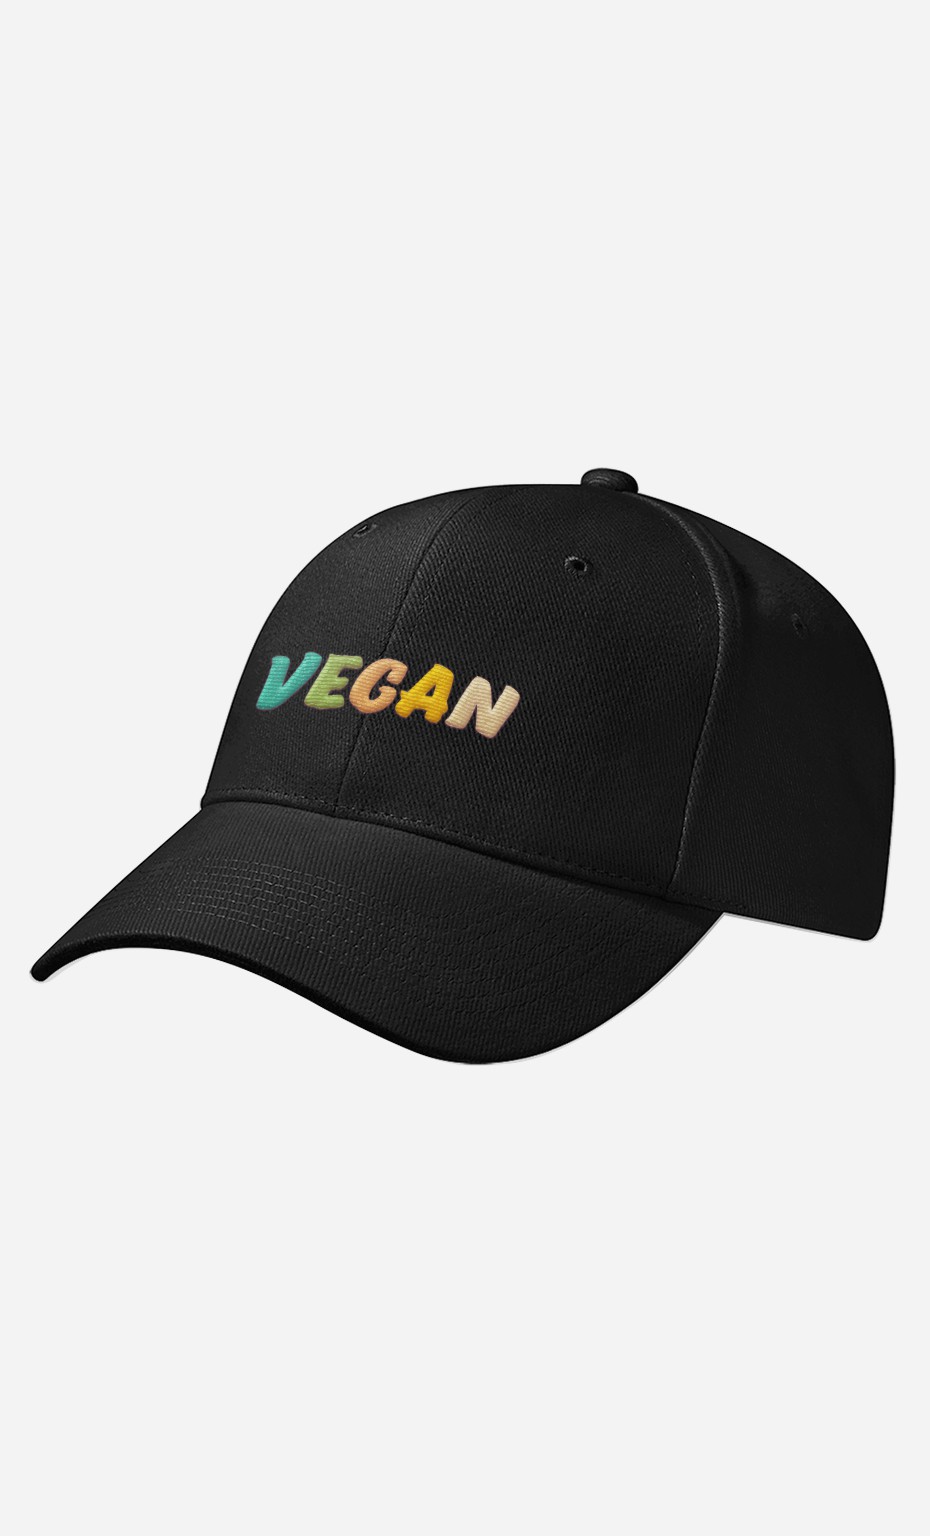 Cap Vegan